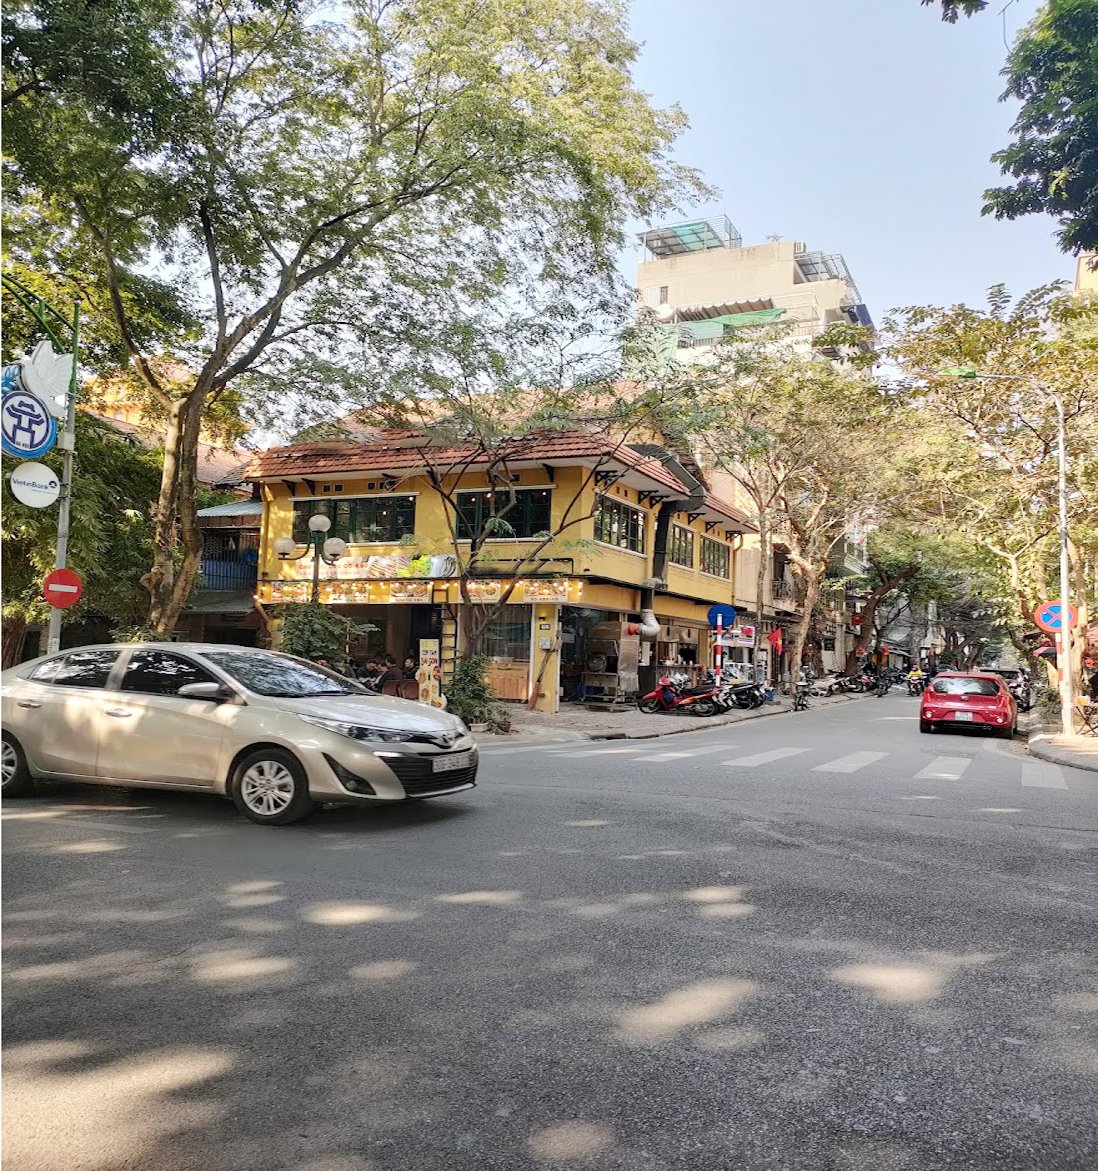 Bán nhà mặt phố Hoàn Kiếm 60m2, Lô Góc Kinh Doanh, View 2 Phố lớn, 2 Mặt tiền 15 mét, Vỉa hè rộng. 1